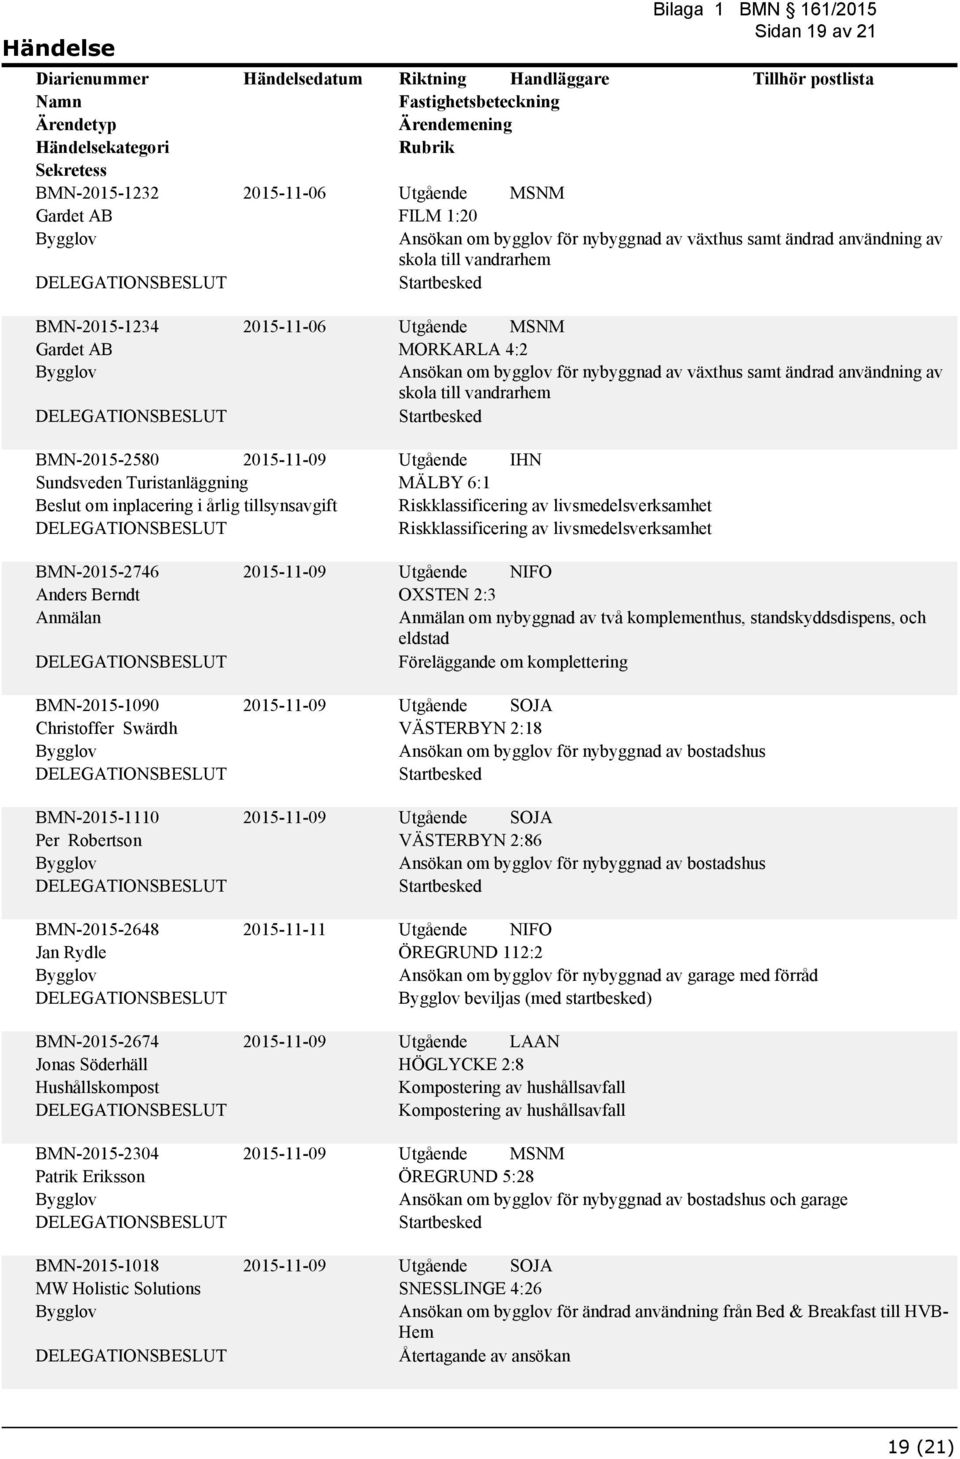 Riskklassificering av livsmedelsverksamhet Riskklassificering av livsmedelsverksamhet BMN-2015-2746 Anders Berndt BMN-2015-1090 Christoffer Swärdh BMN-2015-1110 Per Robertson BMN-2015-2648 Jan Rydle